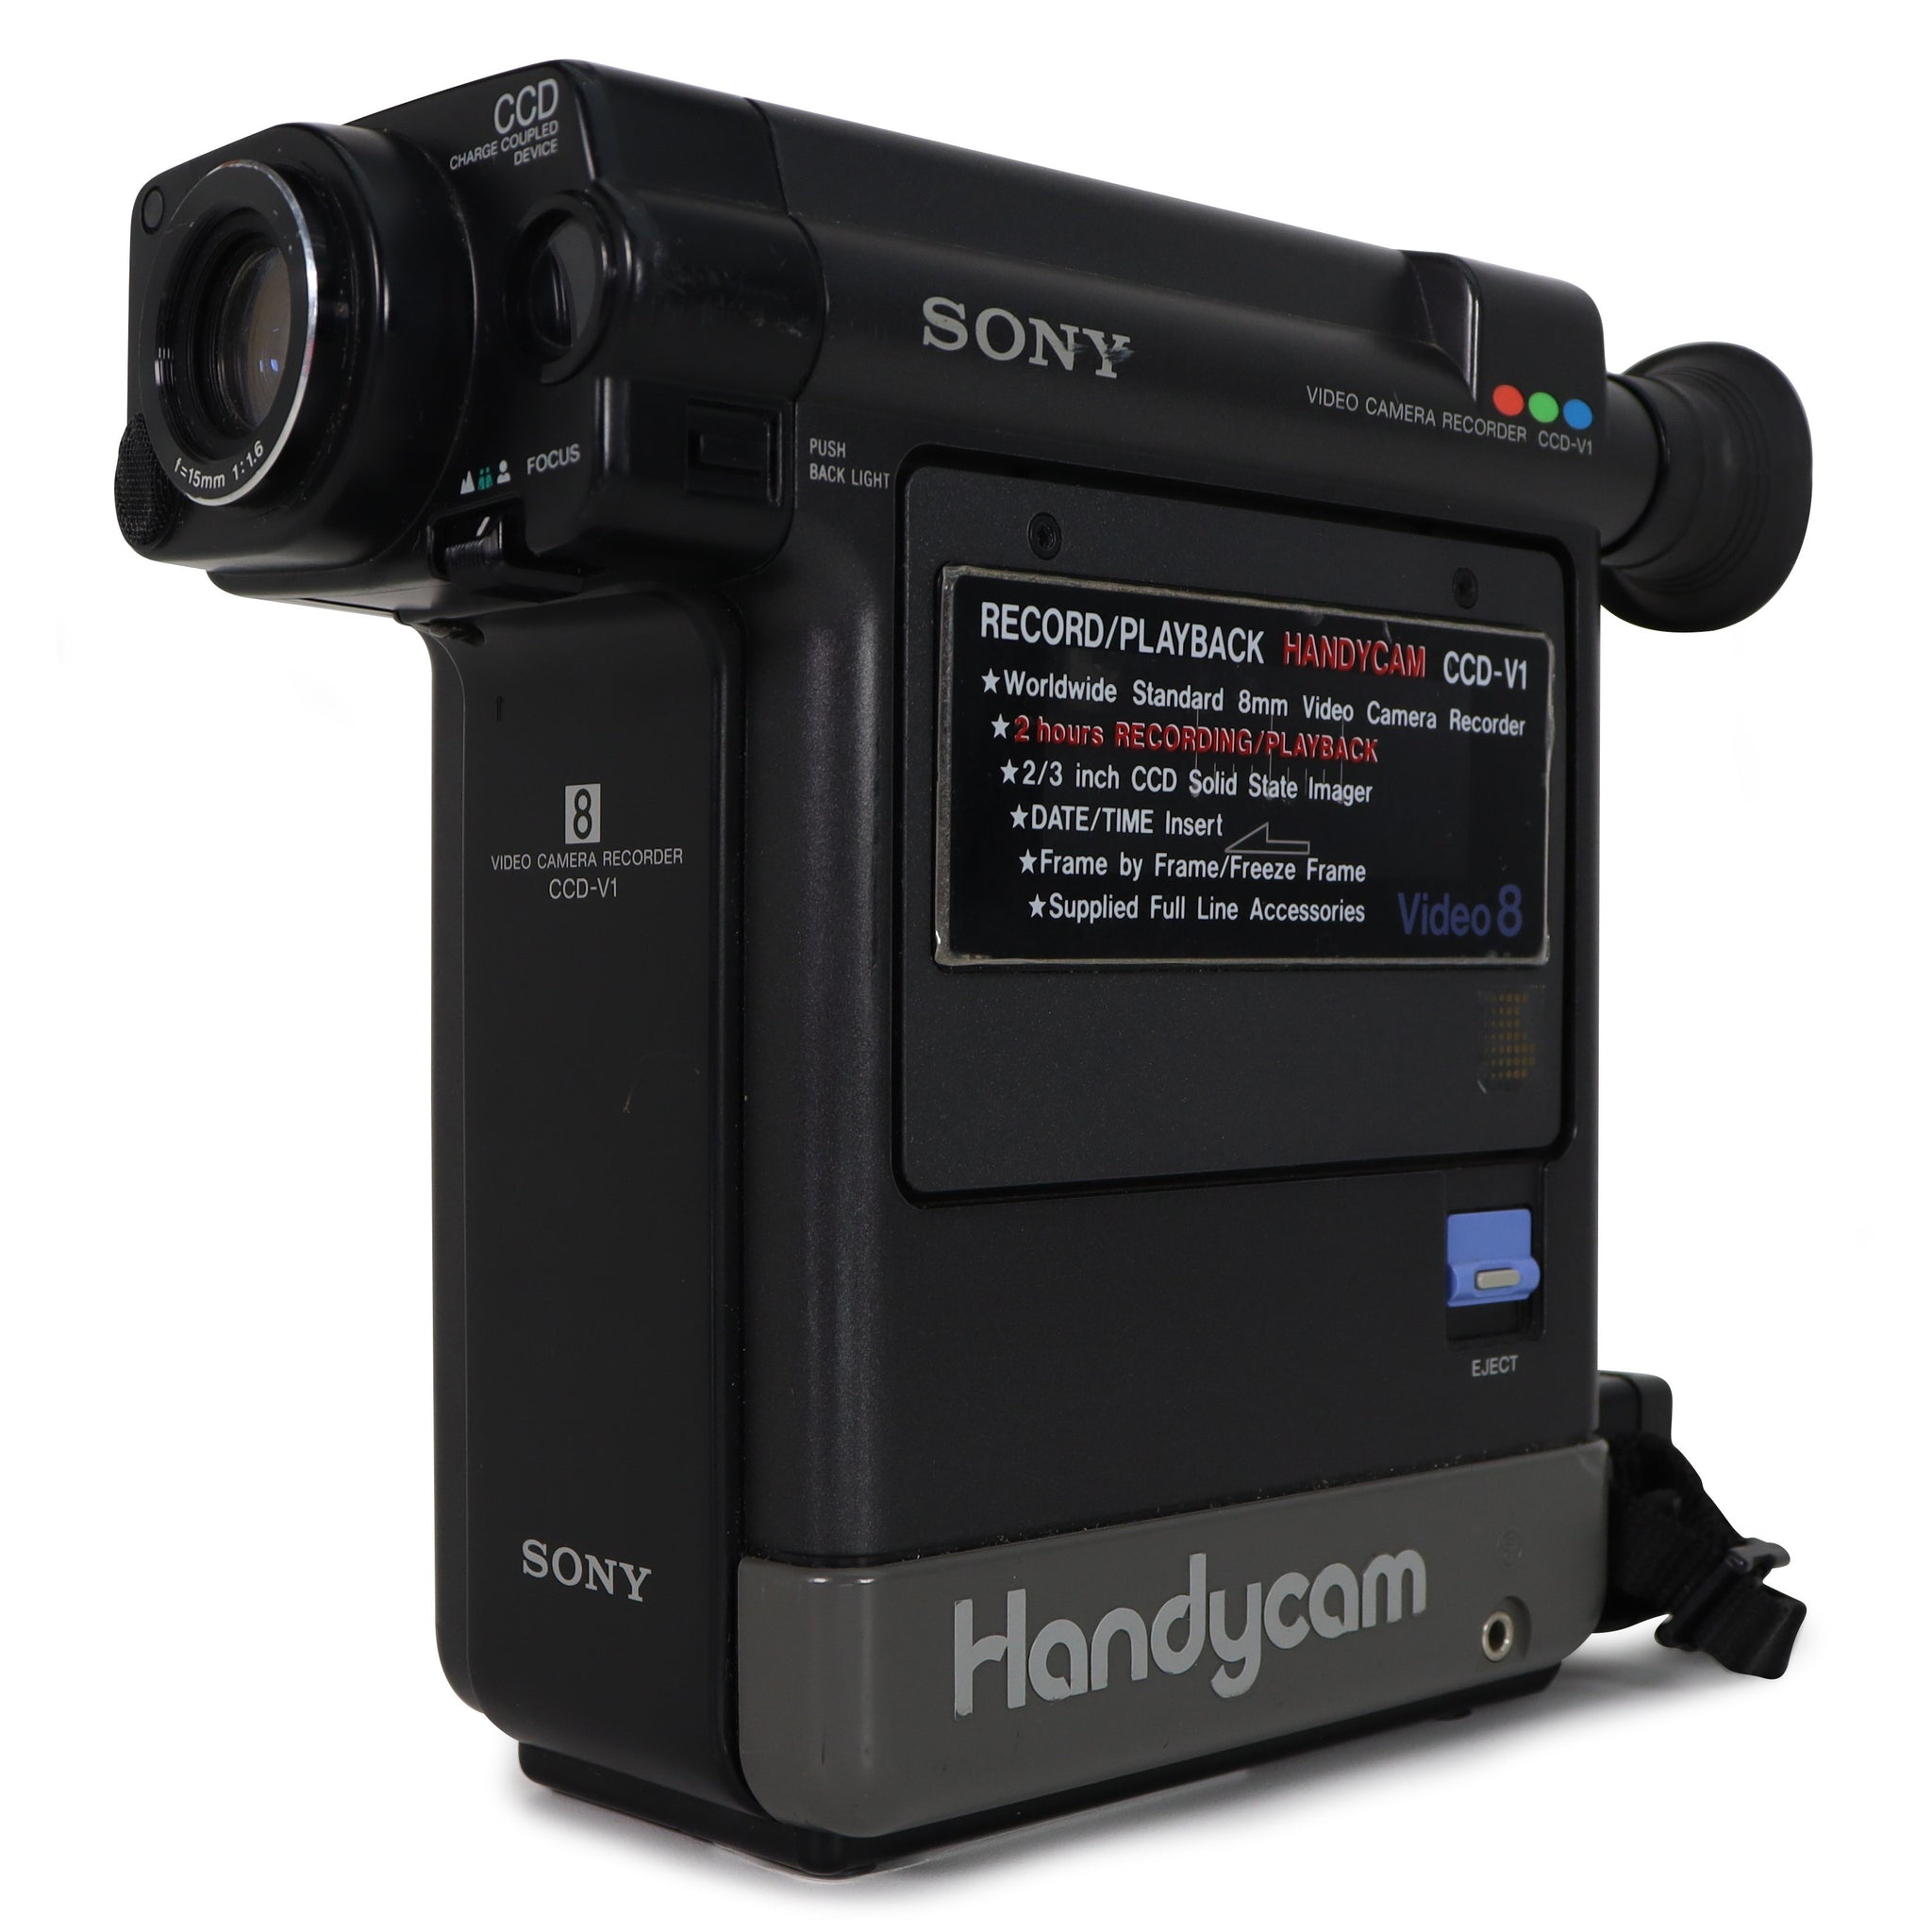 Sony CCD-V1 Handycam Video Camera Recorder Video 8 Format